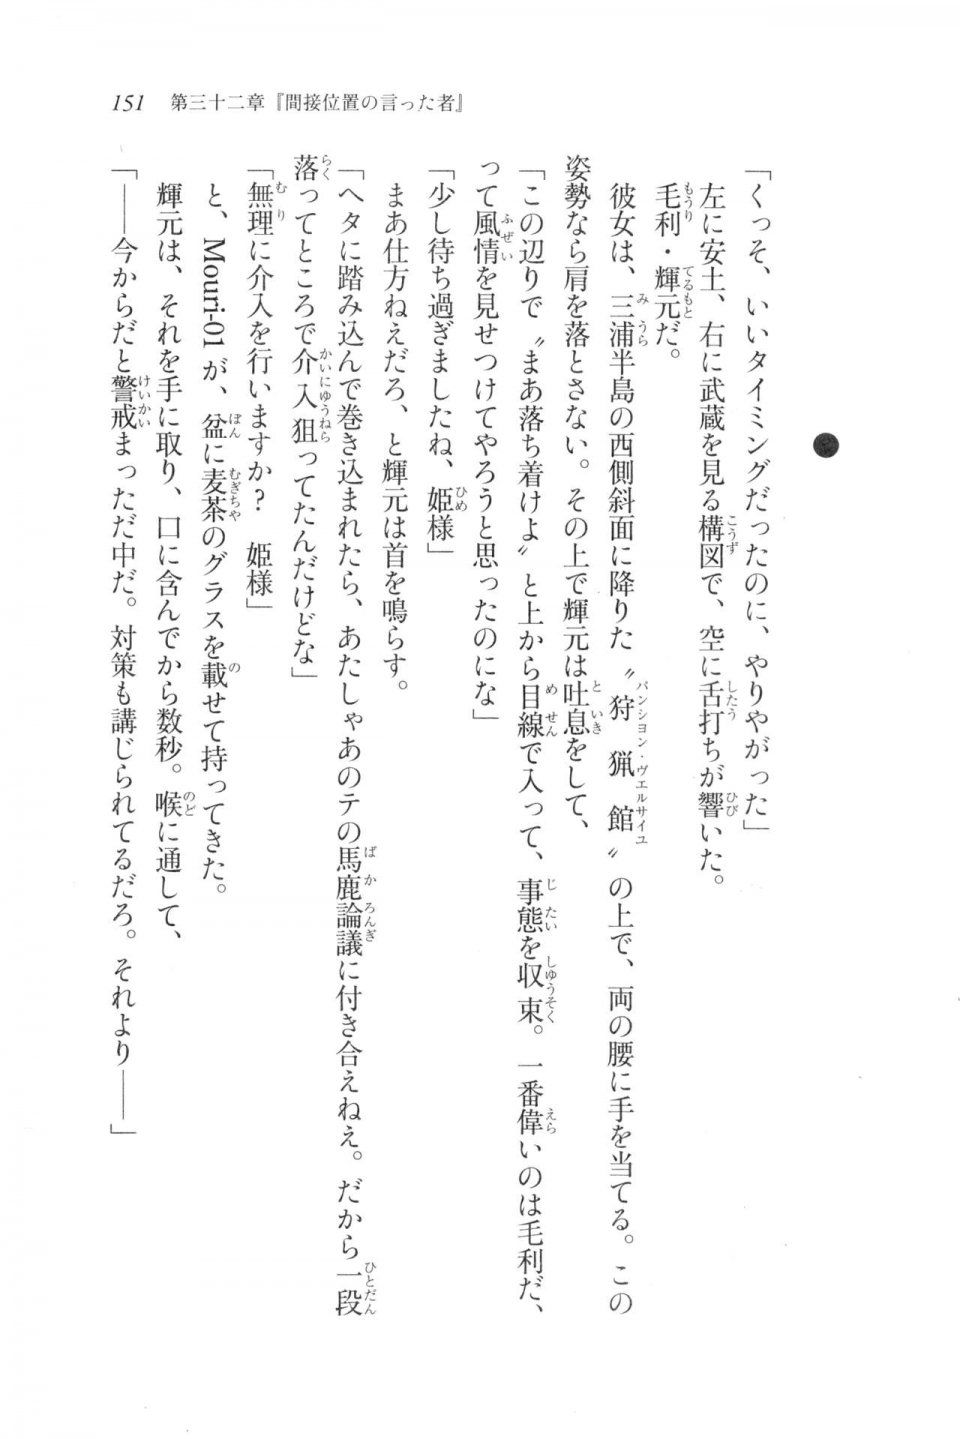 Kyoukai Senjou no Horizon LN Vol 20(8B) - Photo #151